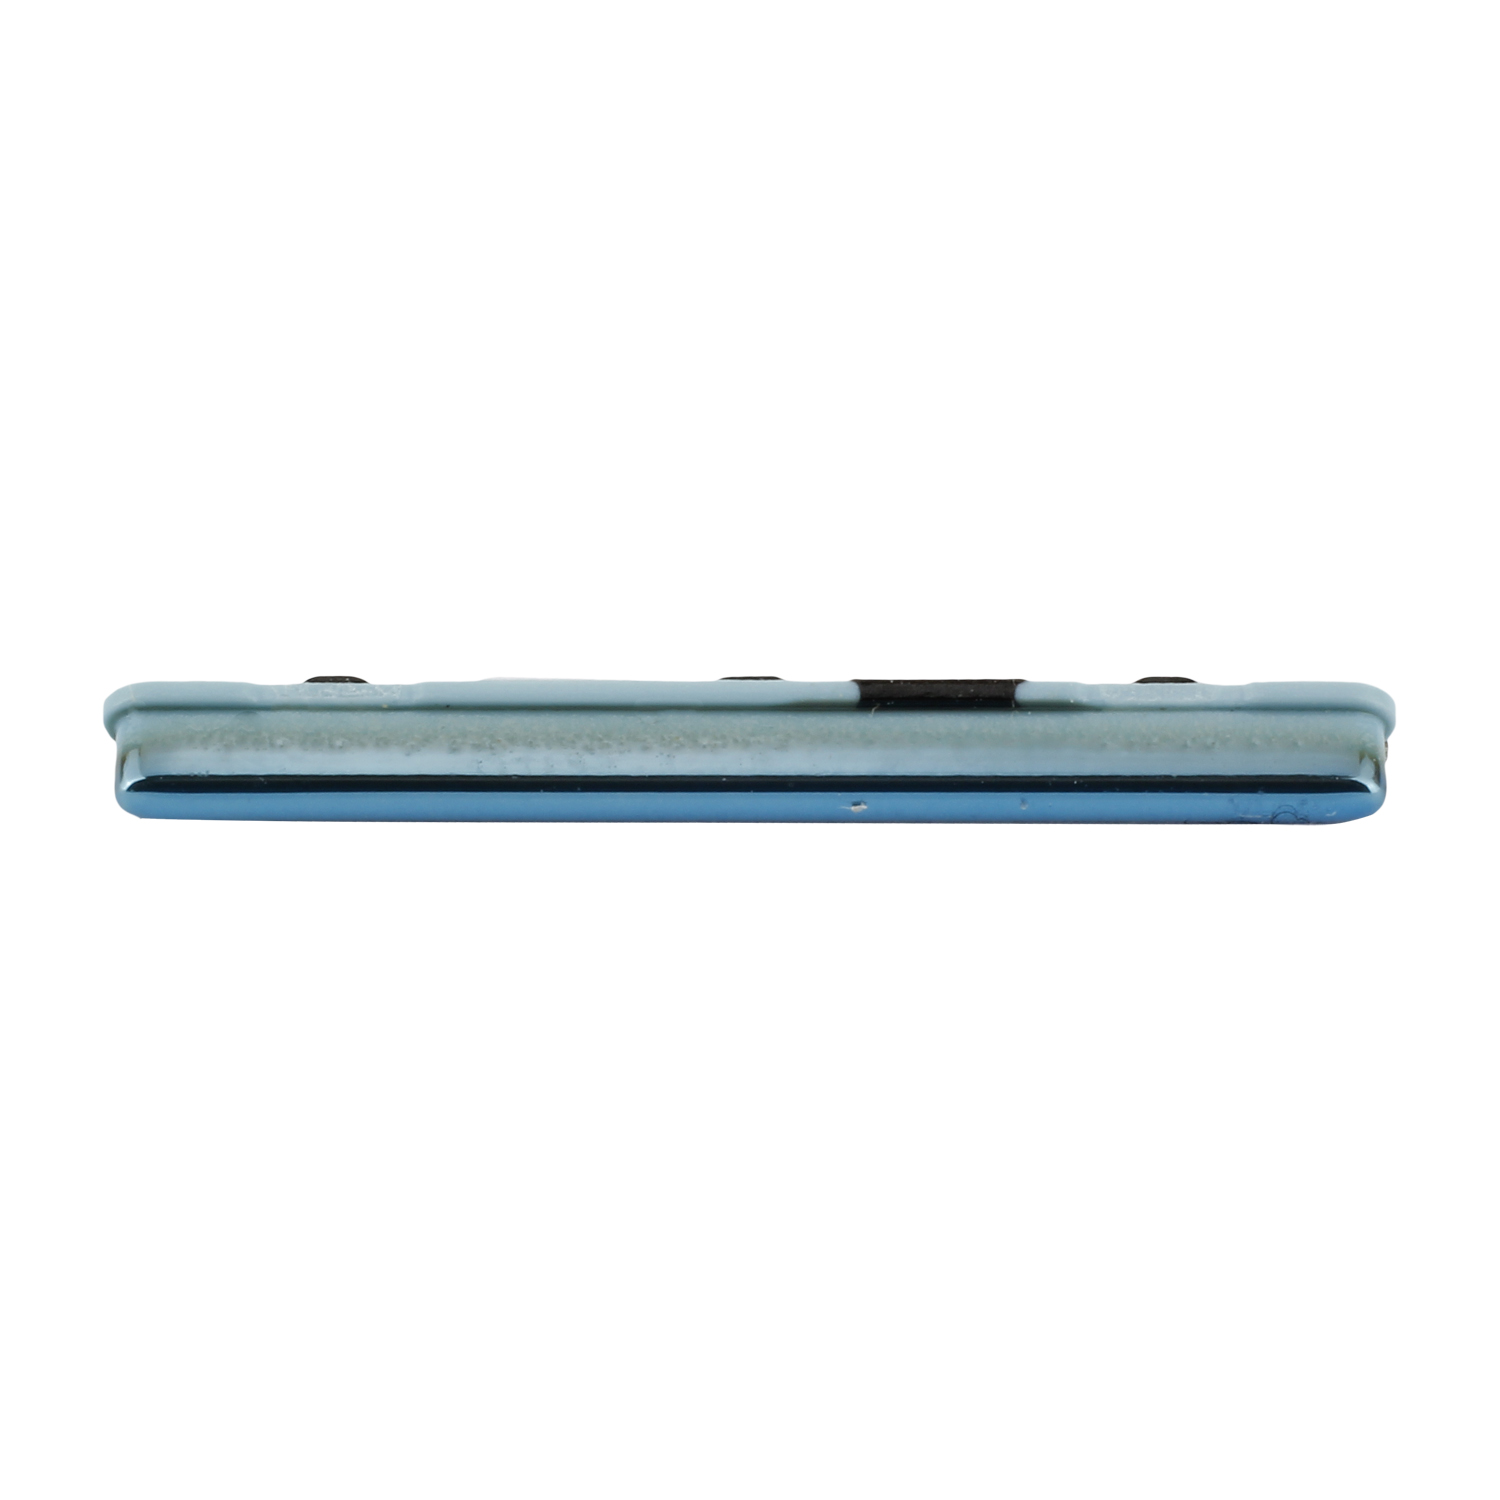 Samsung Galaxy A51 A515F Volume Key, Prism Crush Blue